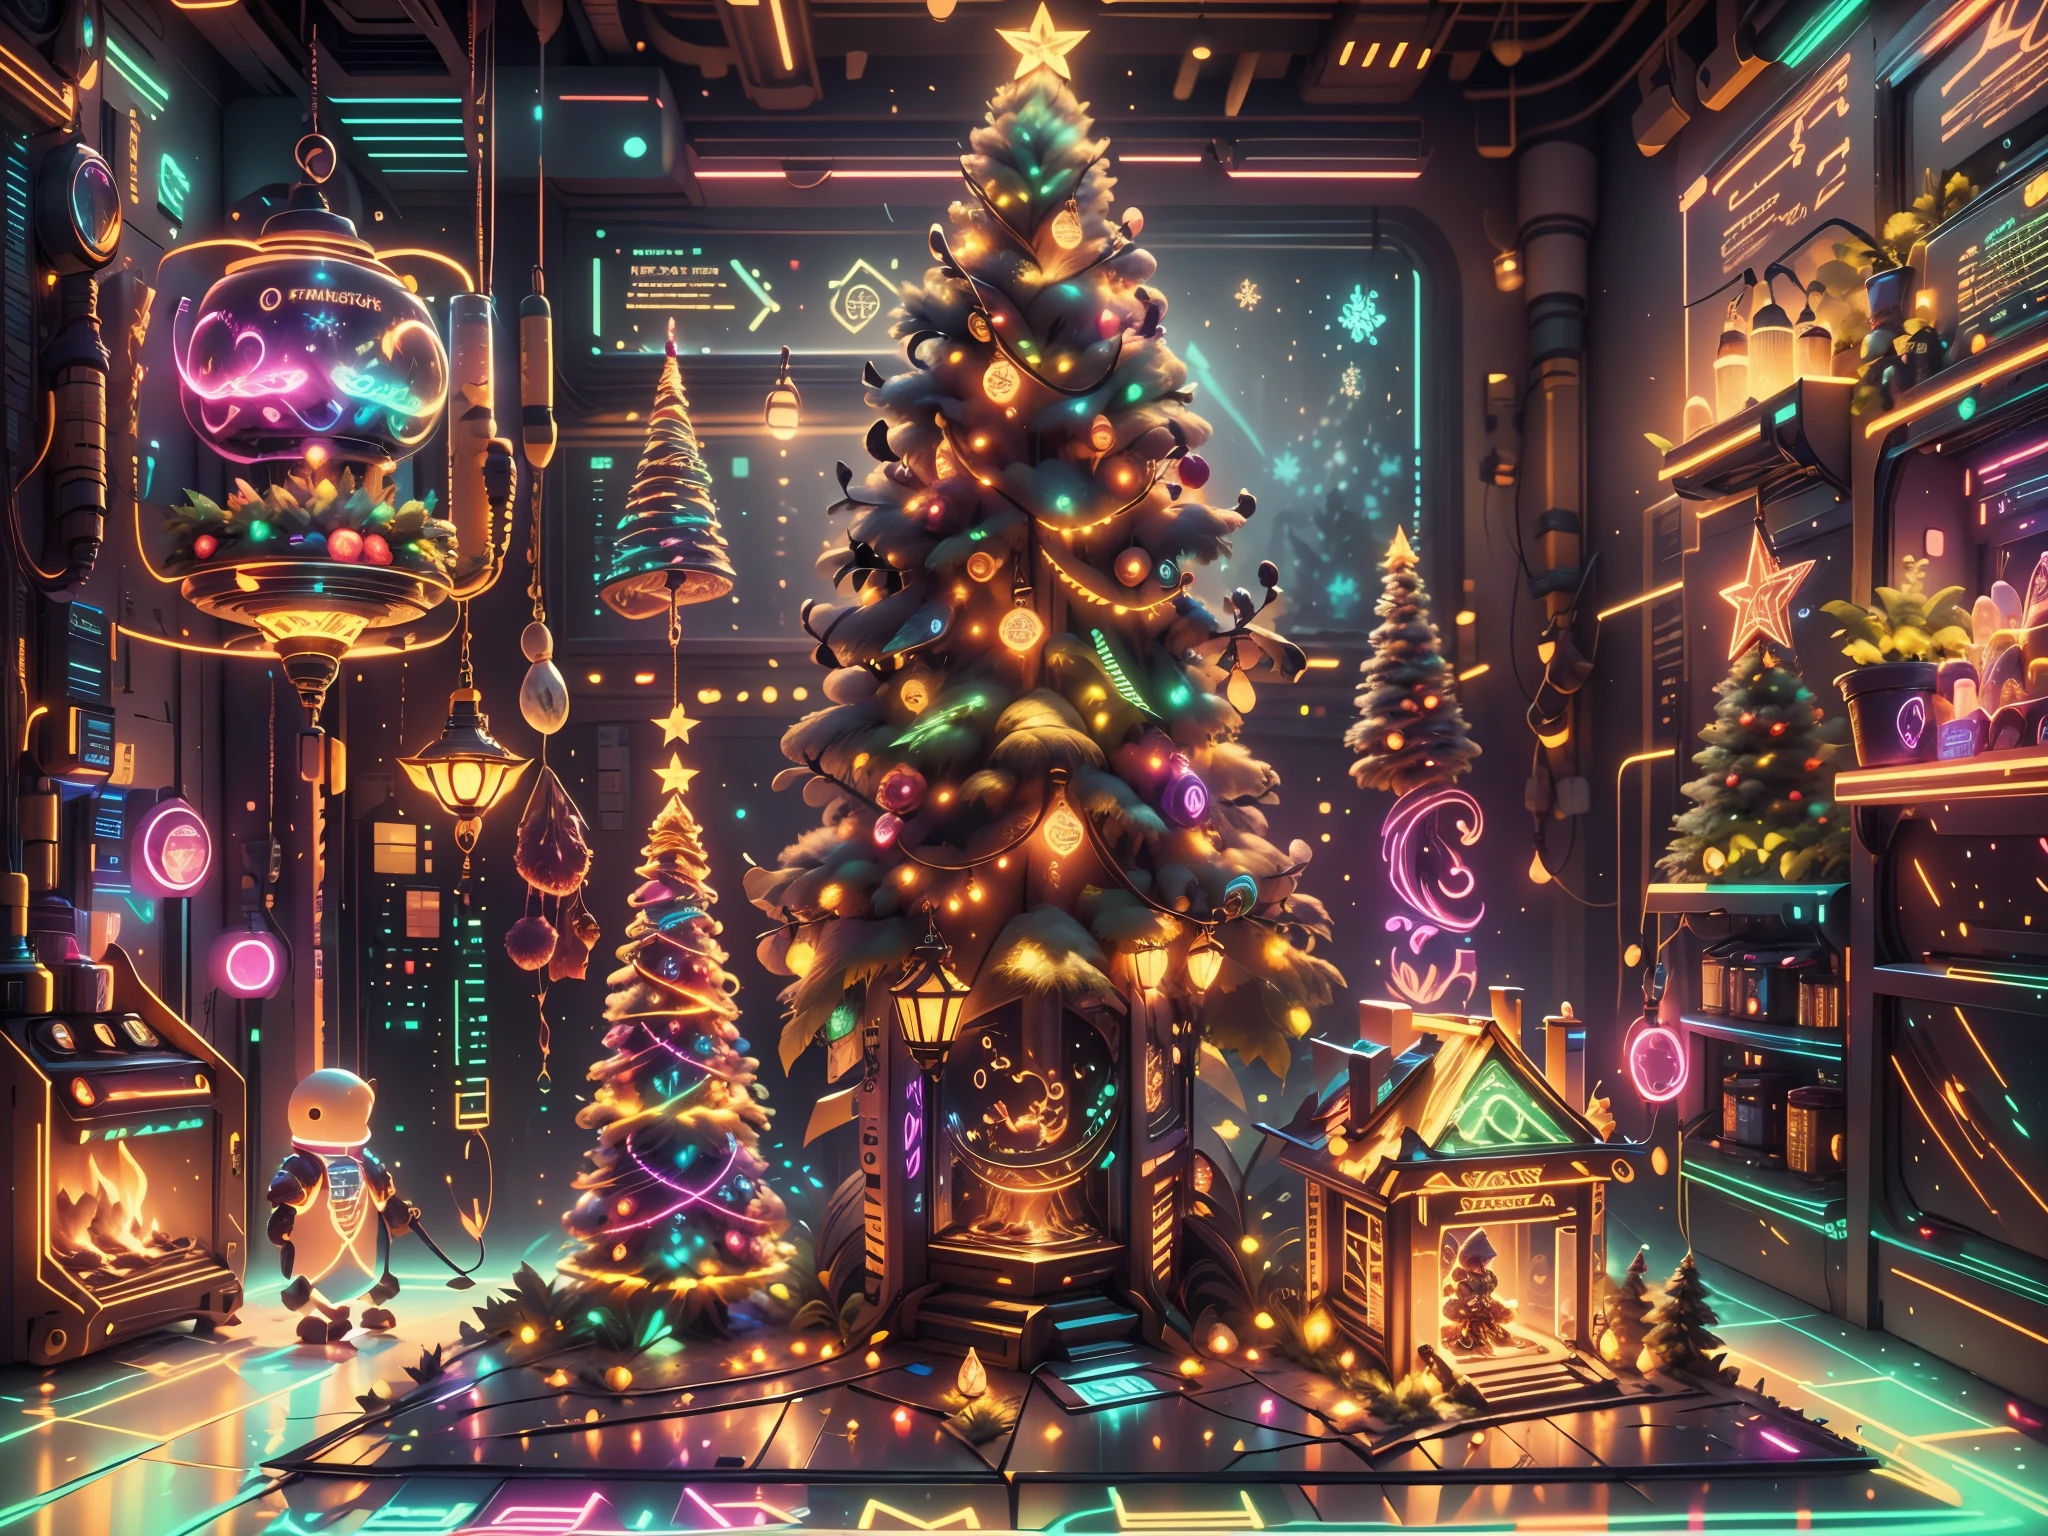 （未来科幻，赛博朋克风格的圣诞房间:1.5），(以未来派赛博朋克圣诞元素装饰风格)，(霓虹灯光)，机械壁炉、悬挂在机械楼梯上的灯笼、未来派圣诞树下包裹着五彩缤纷的礼物、堆满礼物的机械地板、装饰风格的松树、金属地板、圣诞气氛、传统的圣诞气氛、圣诞节快乐、礼品标签、圣诞花环、装饰风格、金属带、圣诞树灯、糖果和零食，姜饼人，灯光，未来派圣诞装饰，(科幻时尚霓虹灯科幻家具)，窗外的城市全景，夜景，房间里充满了欢乐和惊喜，圣诞房间装饰着闪亮的装饰，人工造雪，充满节日气氛，发光灯，漂亮的装饰机械纹理墙），（未来主义与传统圣诞元素的无缝融合，新旧无缝融合），无人，filigree的细节，优雅迷人，非常详细，虚幻引擎，辛烷值渲染，程序网关，自然的，阴部清洁，平滑度，柔和的灯光，(概念艺术，超高清，艺术站 antasyart，史诗般地看看你的场景，复杂的图案，复杂的细节，超filigree的，基于物理的渲染，非常详细的描述，专业的，超现实主义，超越人类的想象，壮观的灯光，艺术站人气爆棚，虚幻引擎，全球的，最好的质量，8千，高分辨率，杰作，极其详细，现实地，1.4 倍真实感）, 霓虹朋凯